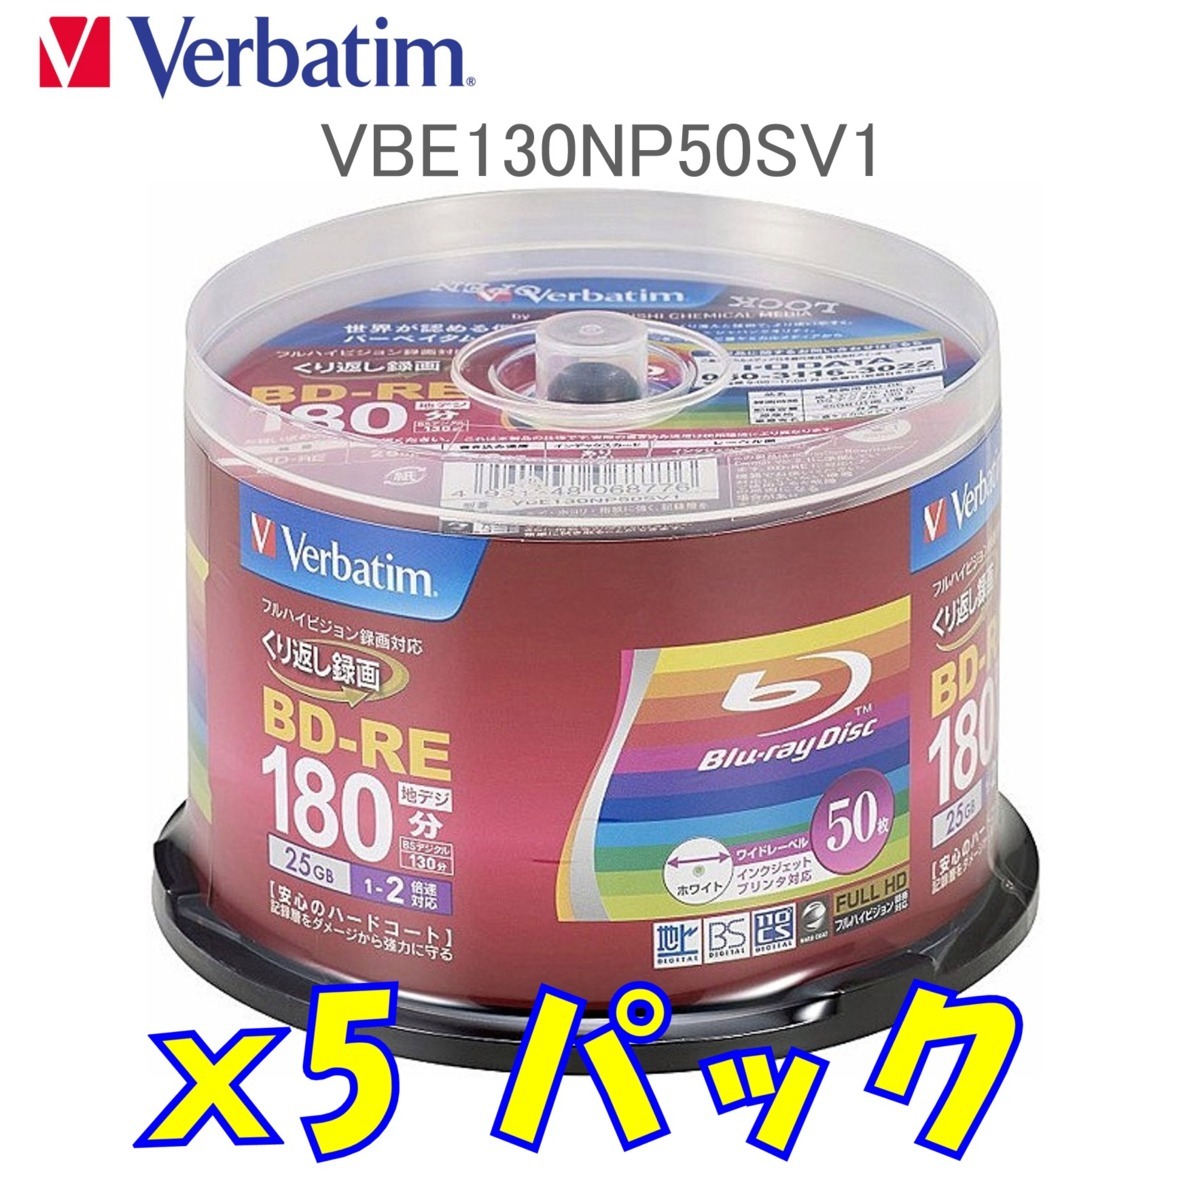 オリジナル Verbatim バーベイタム VBE130NP50SV1x5 1-2倍速 片面1層